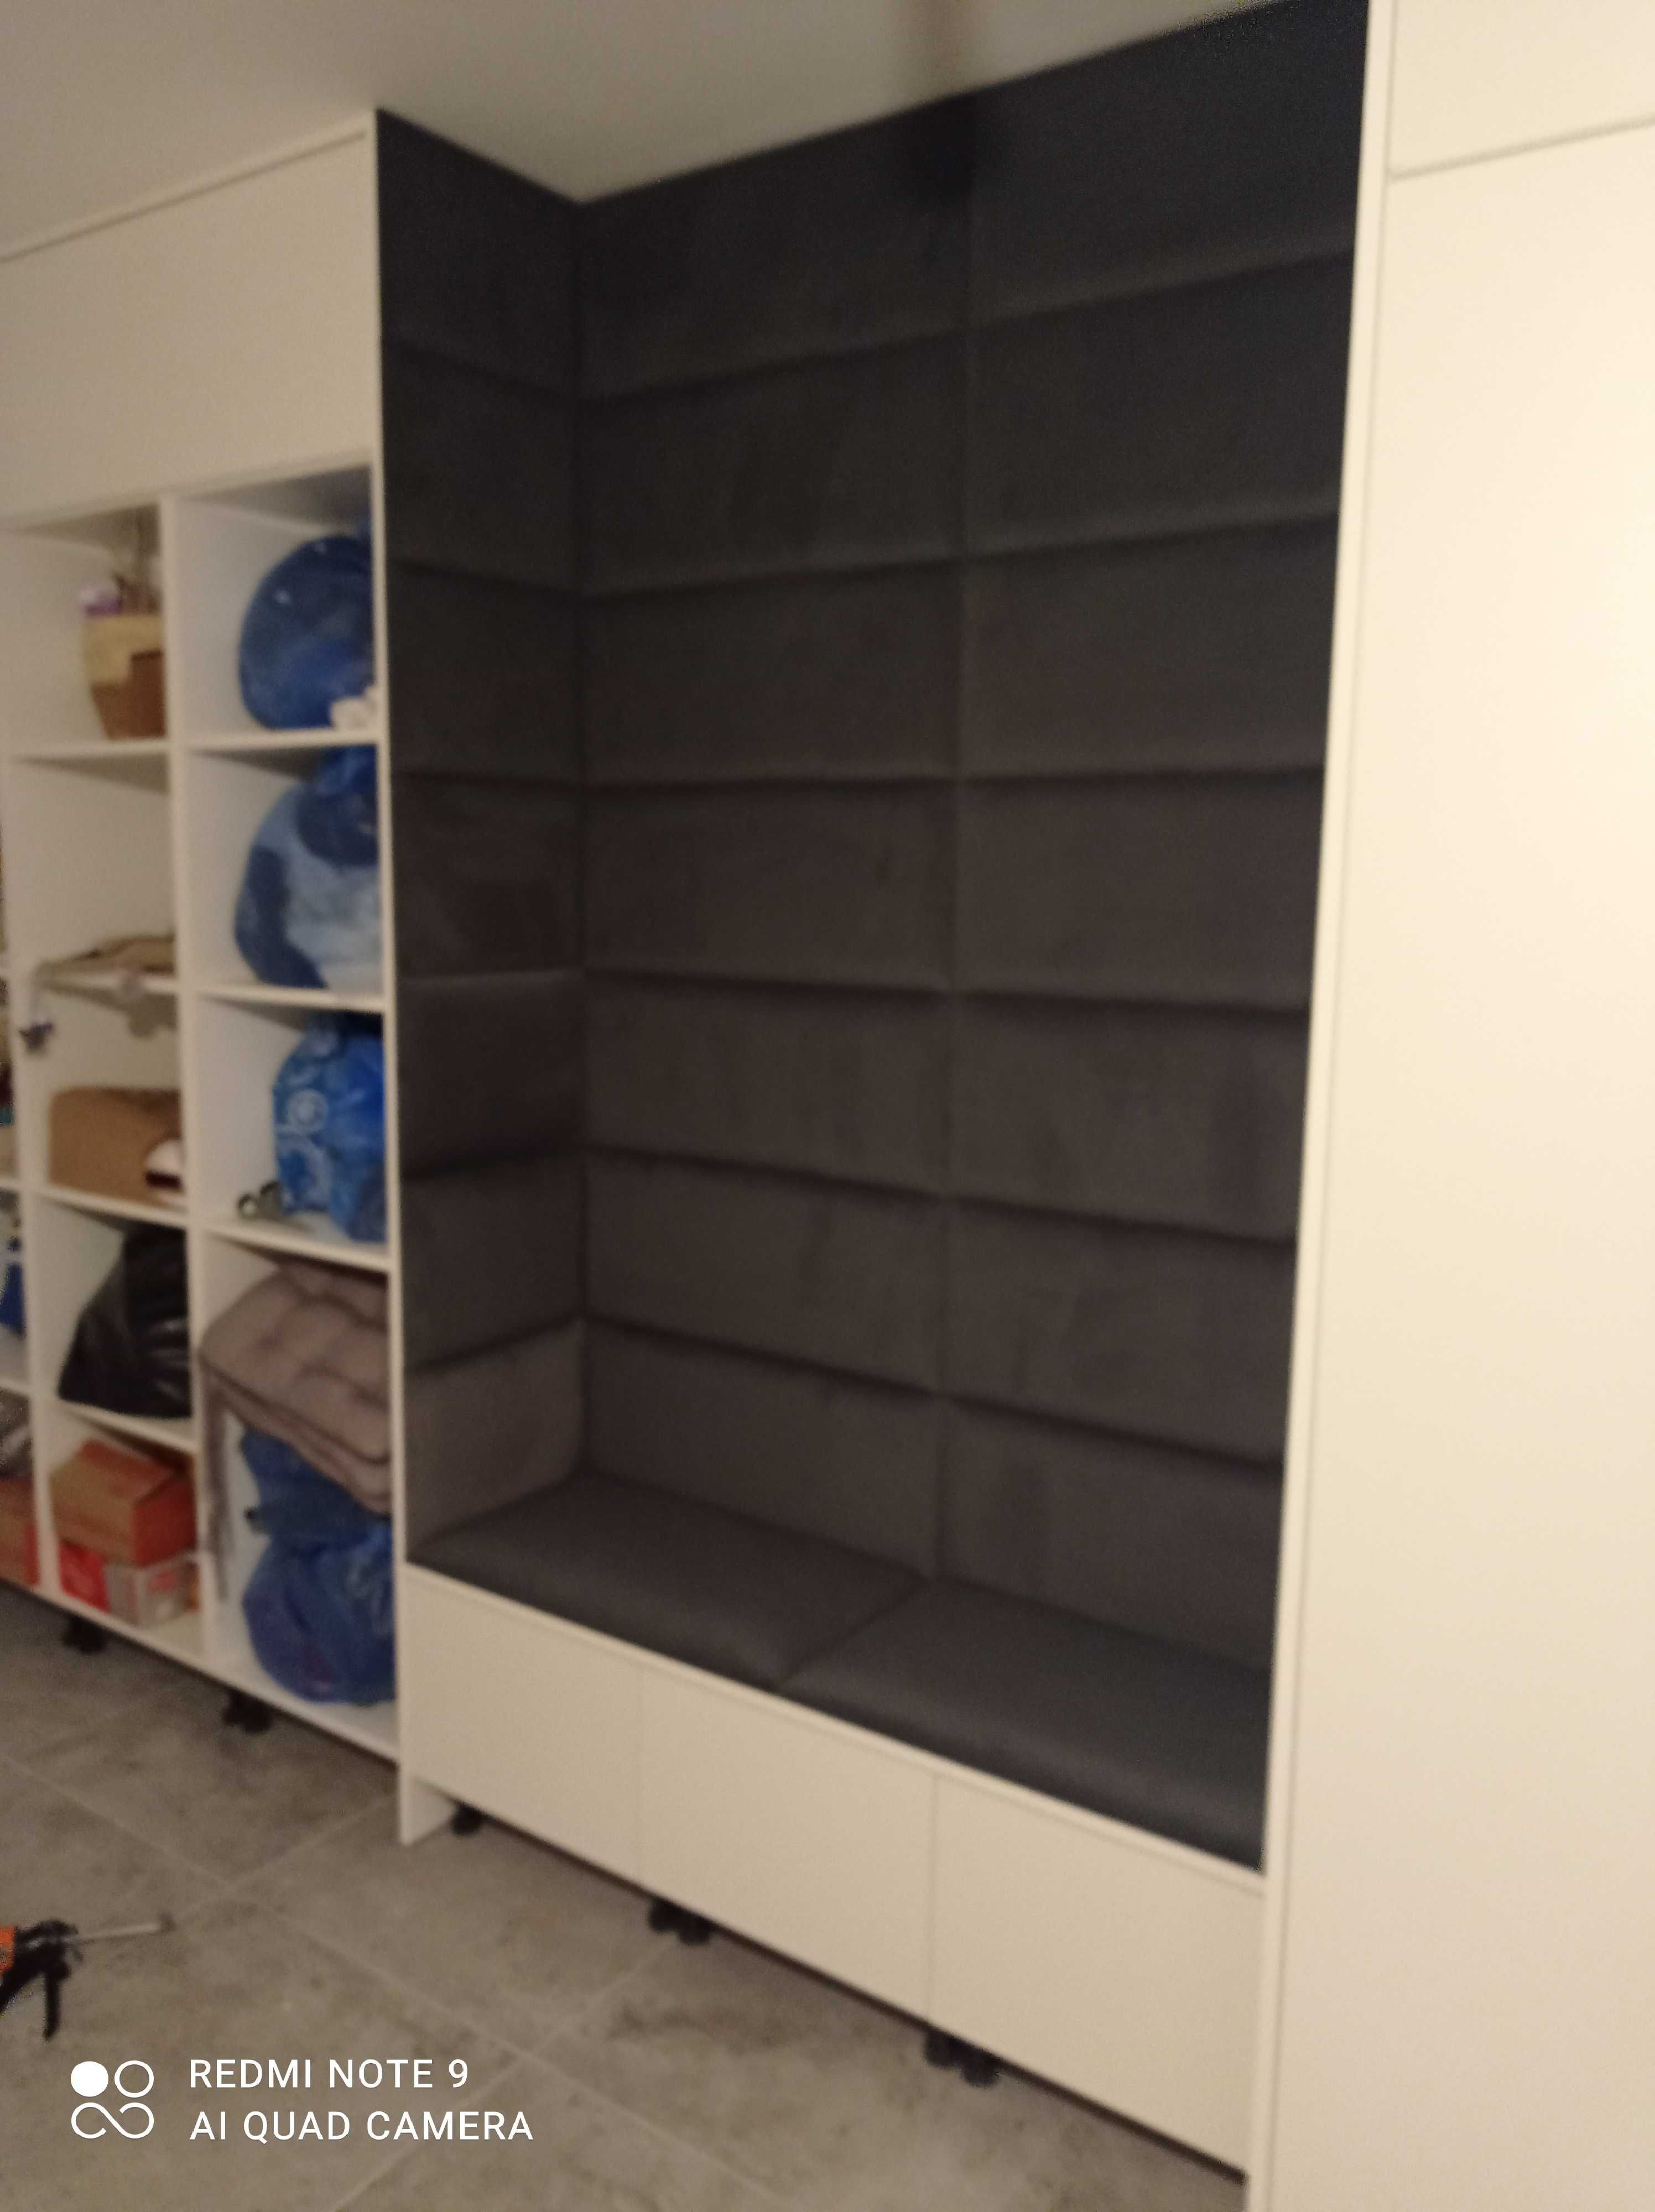 panel panele tapicerowane ścianki garderoby sypialnie na wymiar